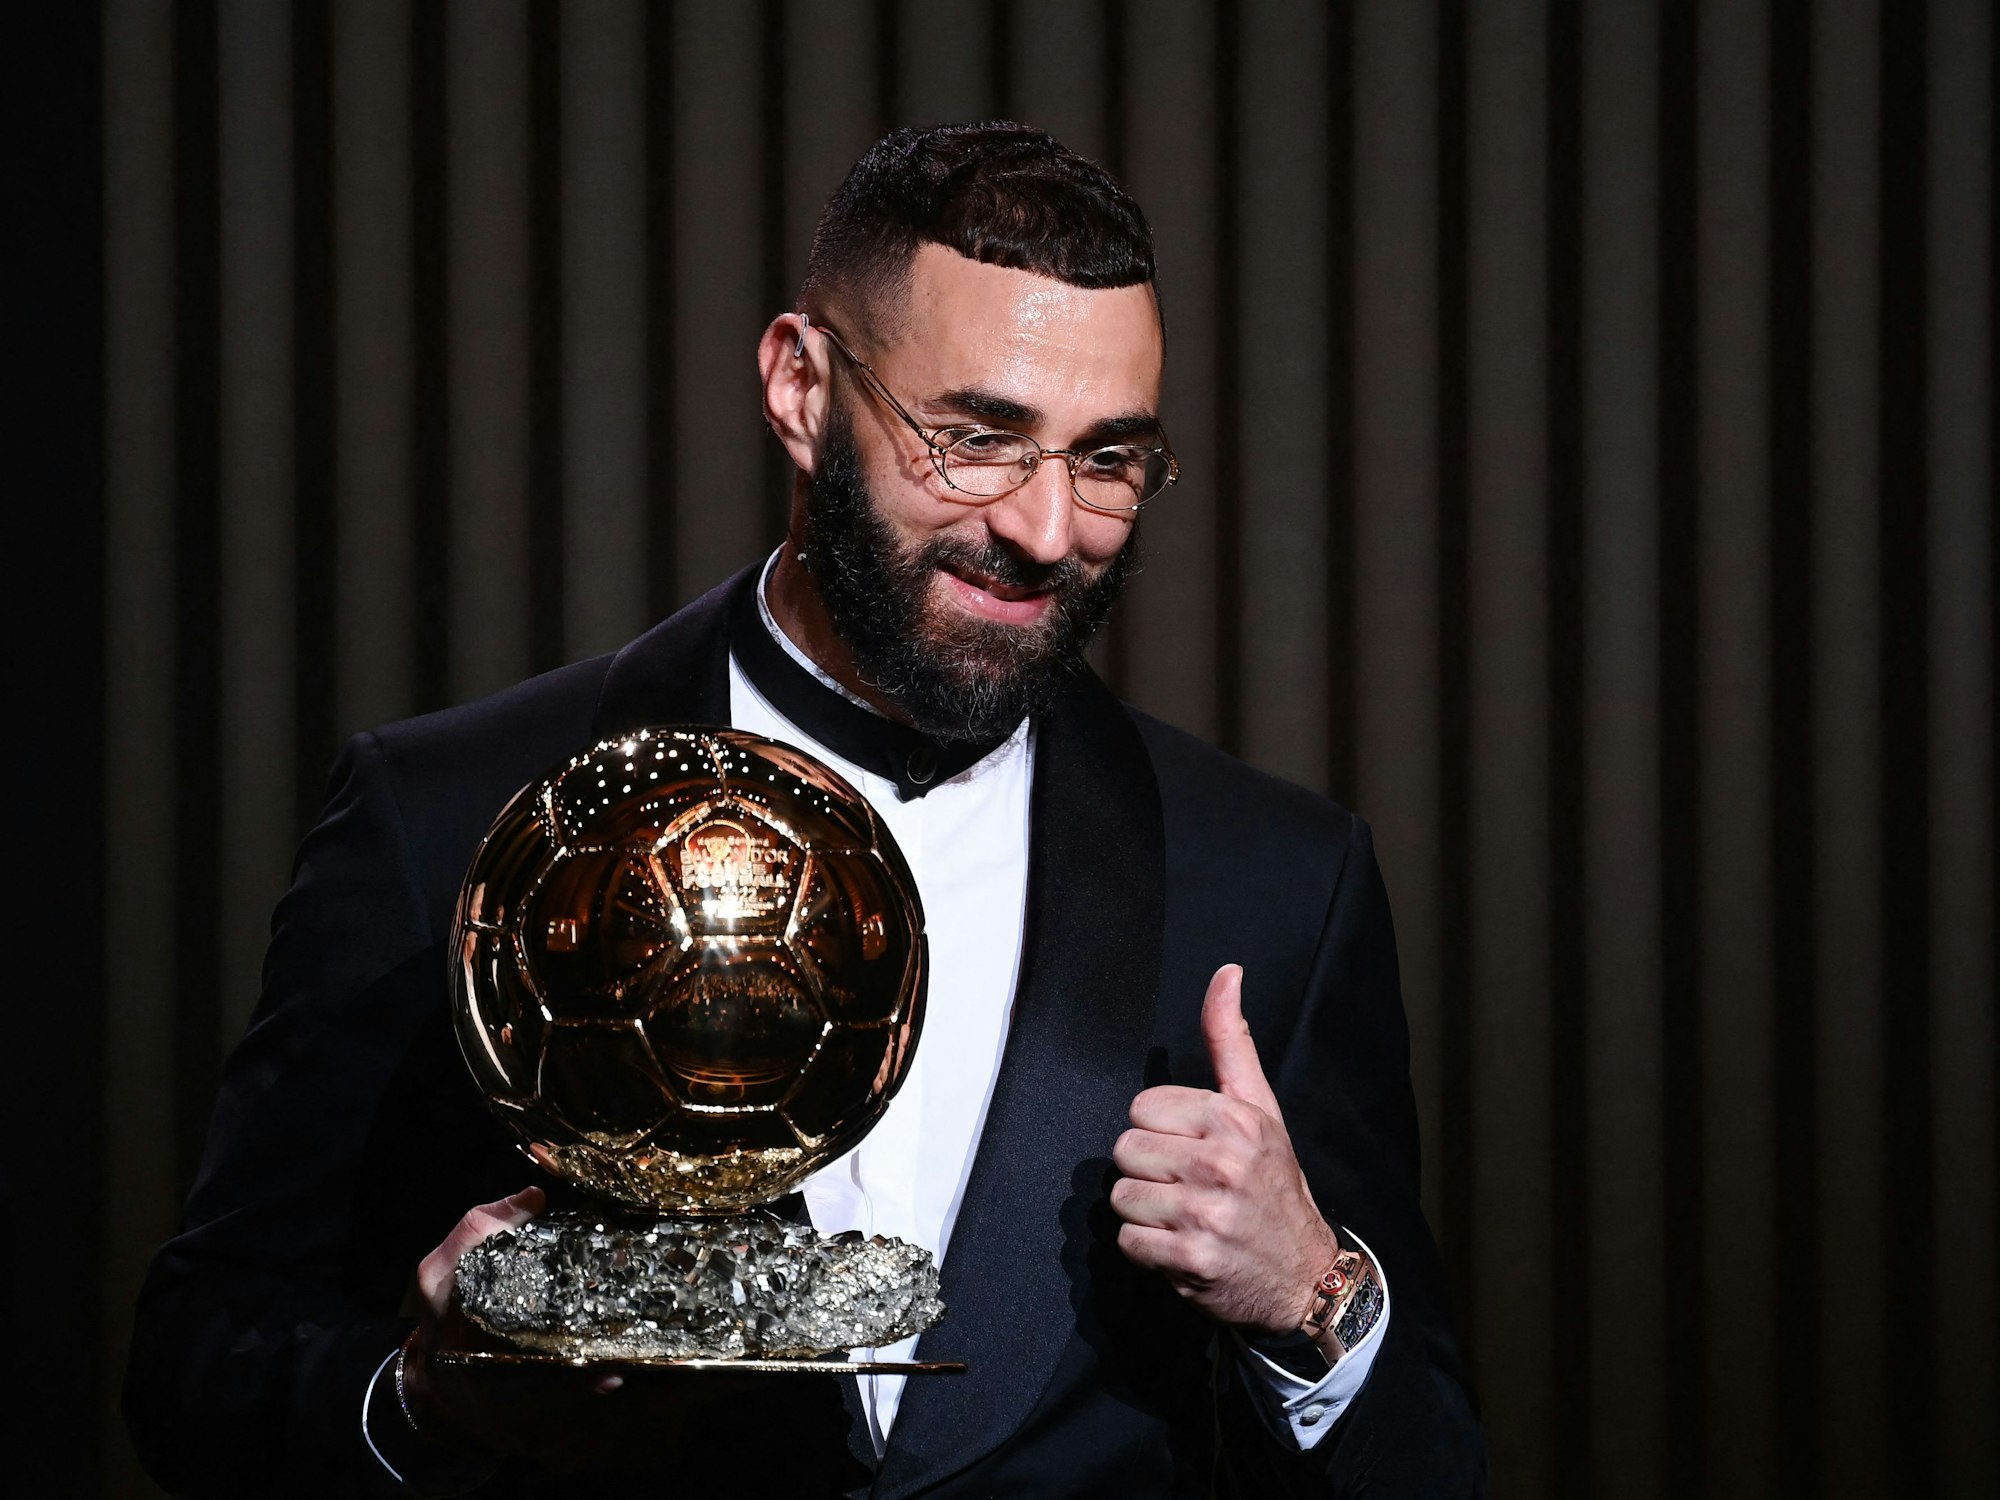 Karim Benzema wird dem Ballon d'Or ausgezeichnet, der in Konkurrenz zur Fifa-Wahl zum Weltfußballer steht.